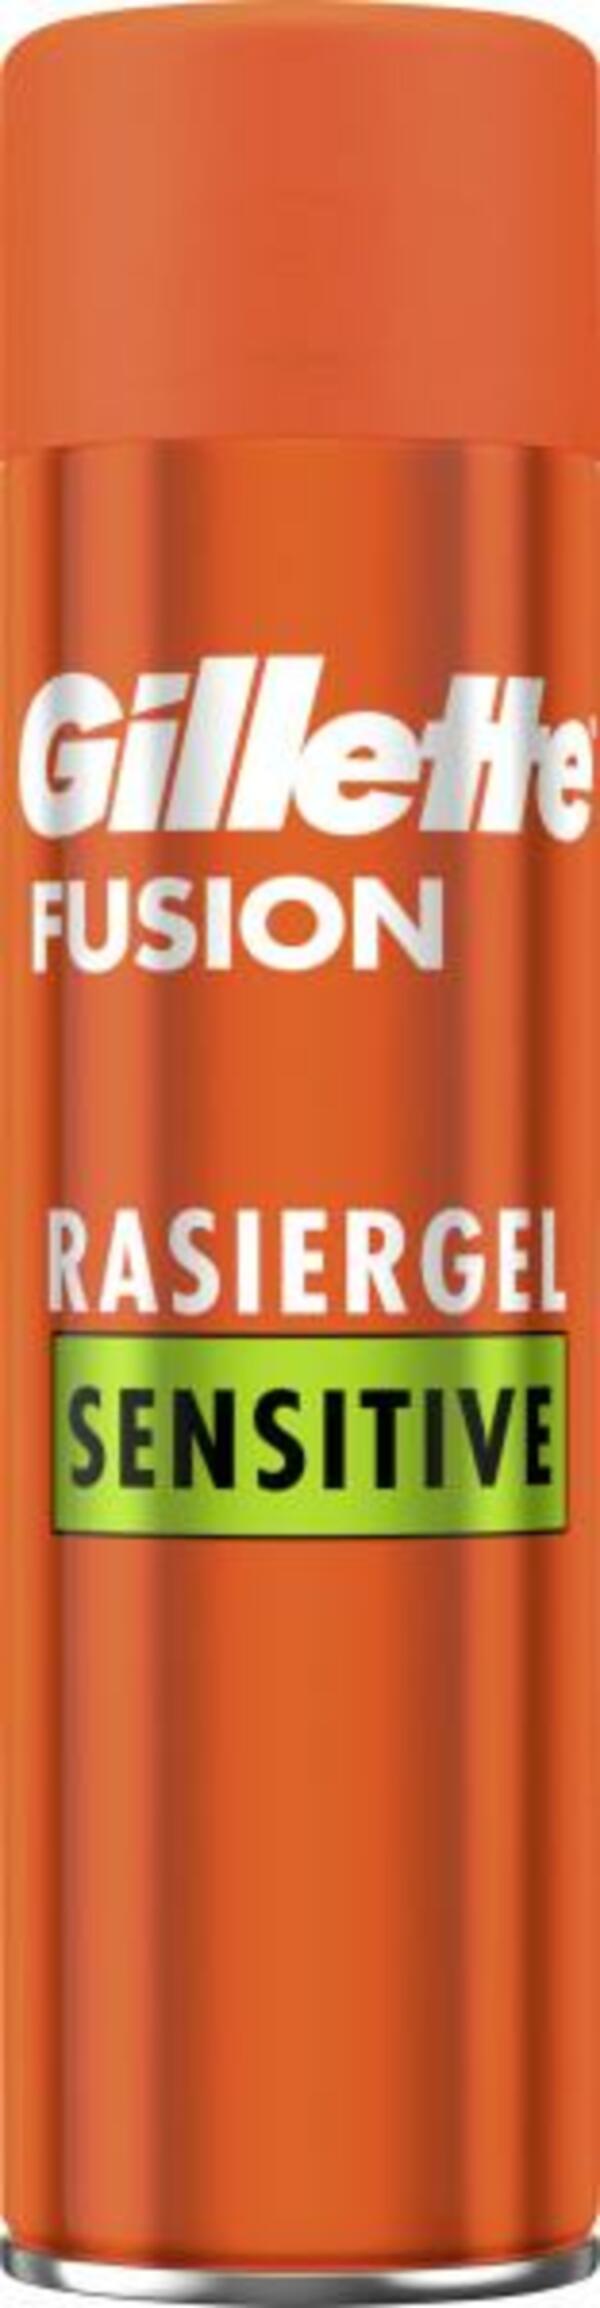 Bild 1 von Gillette Fusion Rasiergel Sensitive